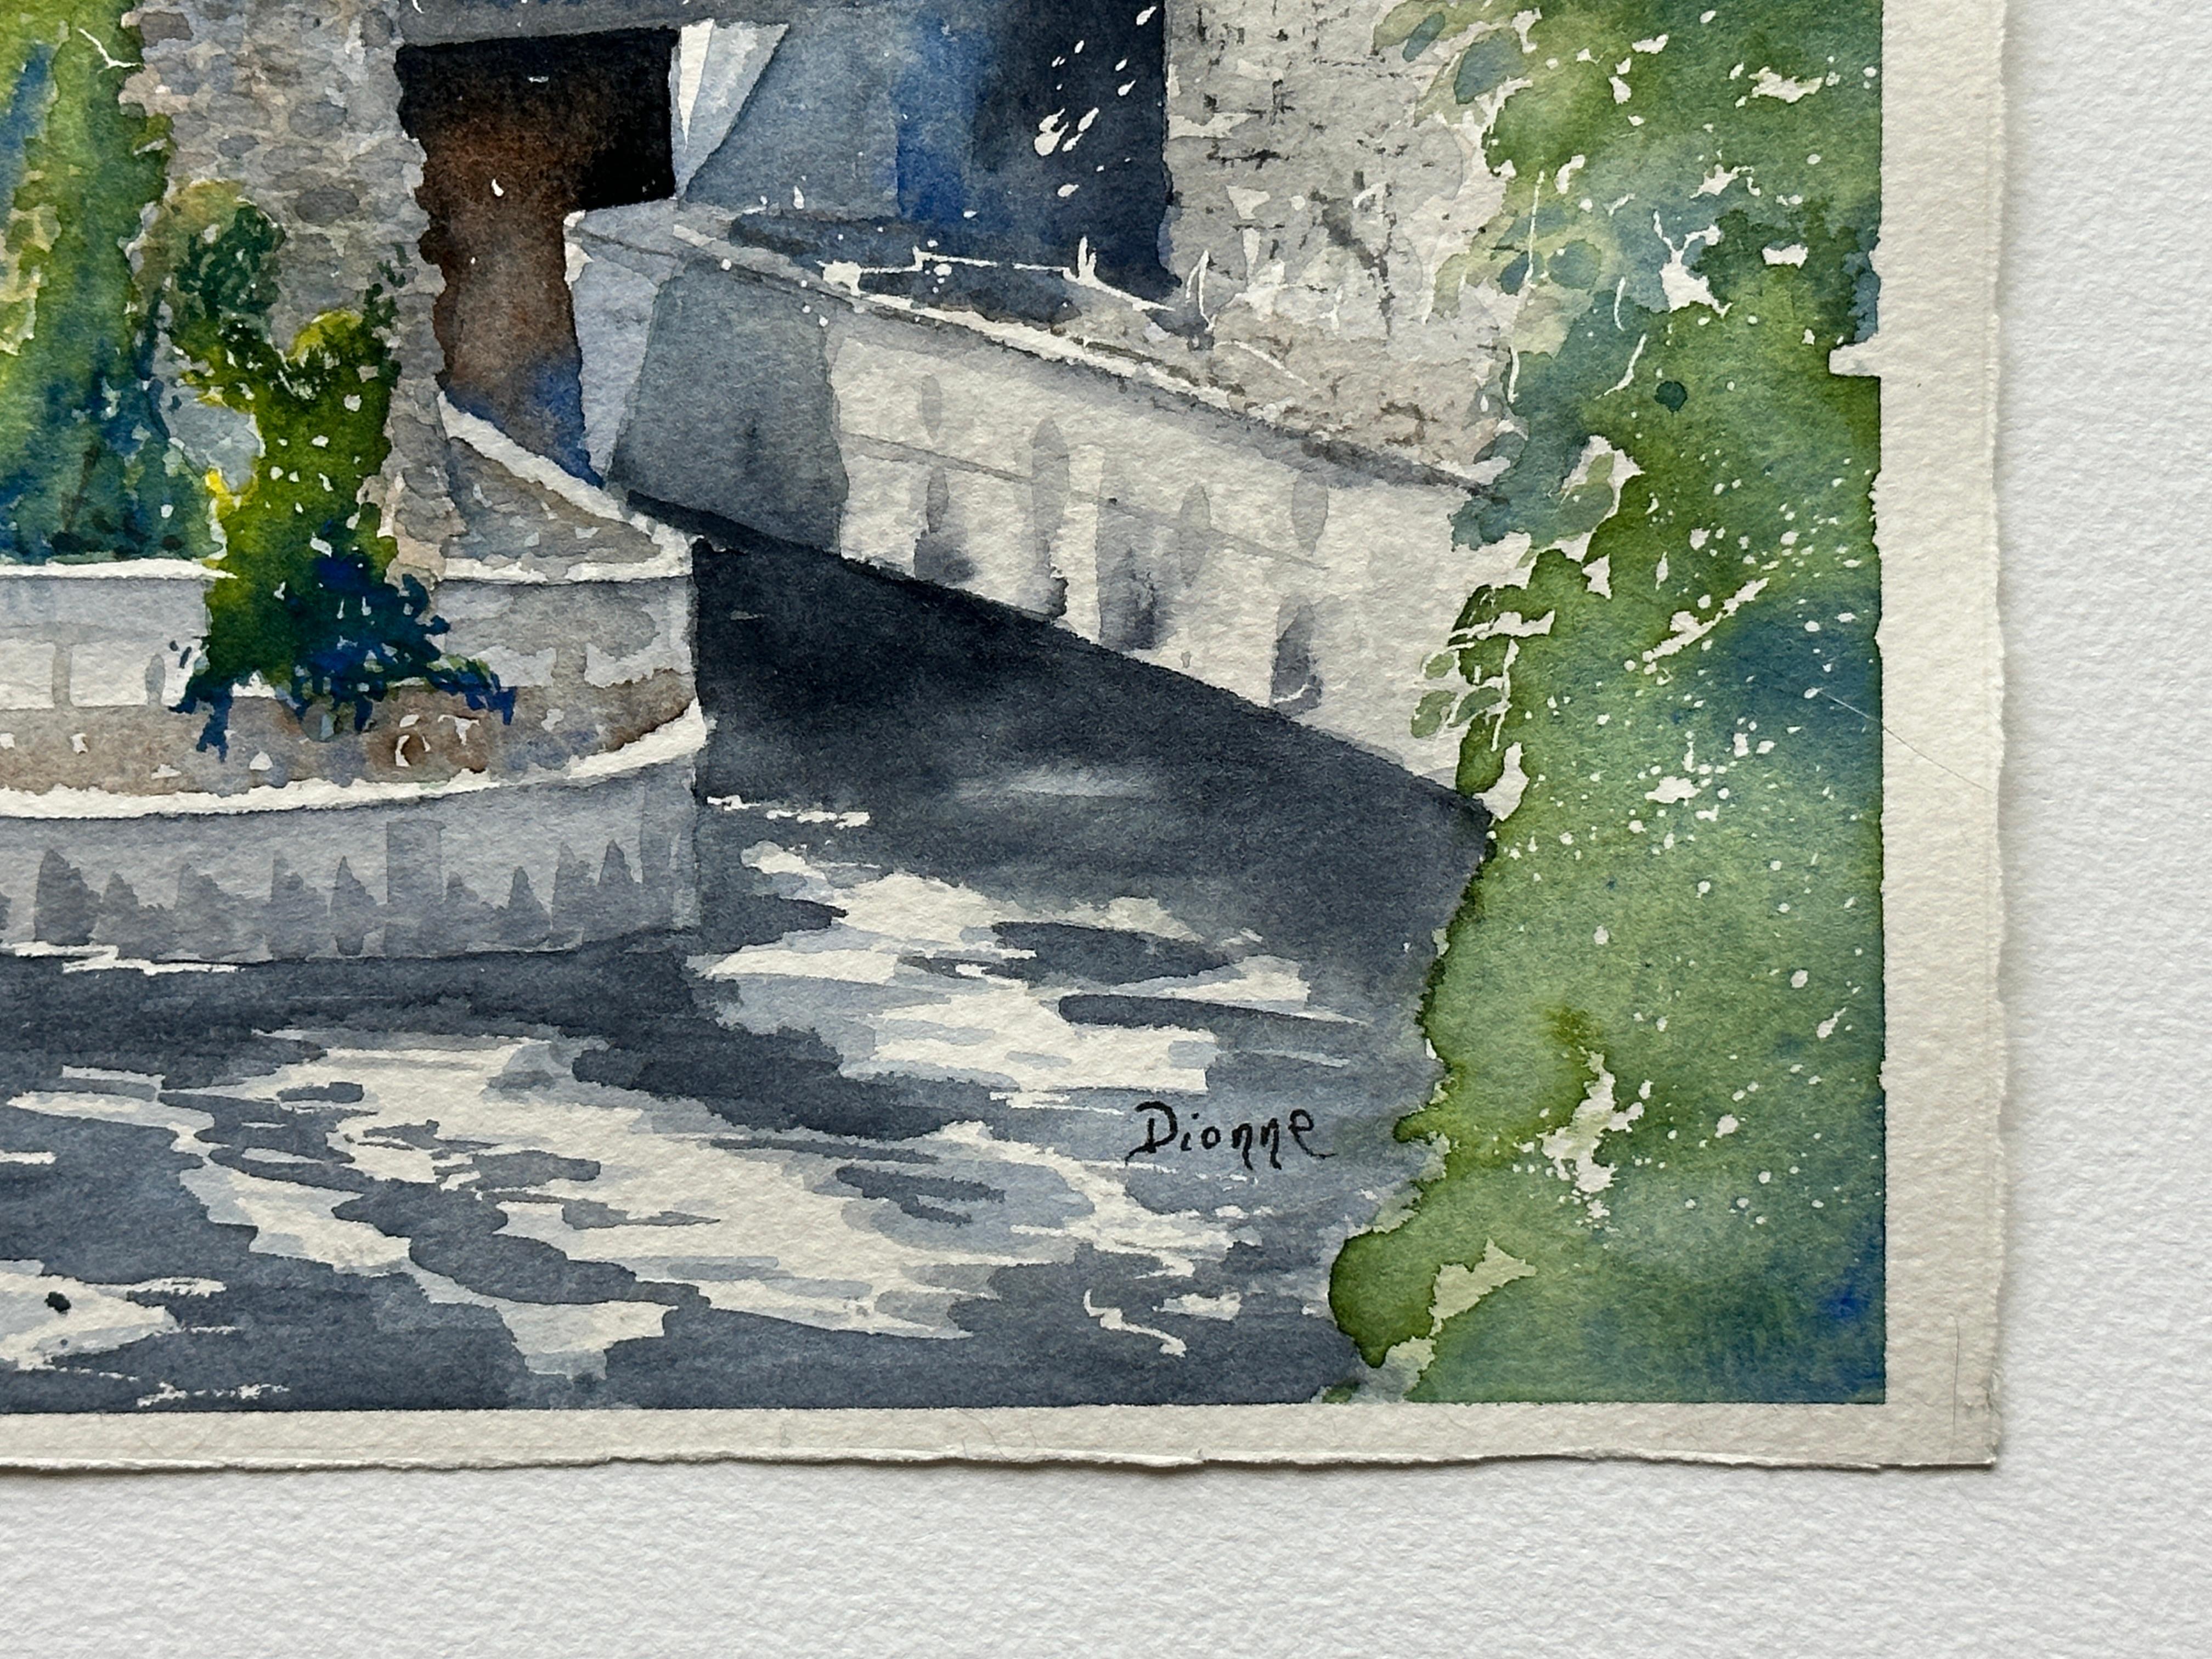 <p>Commentaires de l'artiste<br>L'artiste Maurice Dionne peint un pont par une journée lumineuse avec des gens qui profitent du bruit de l'eau qui coule. 